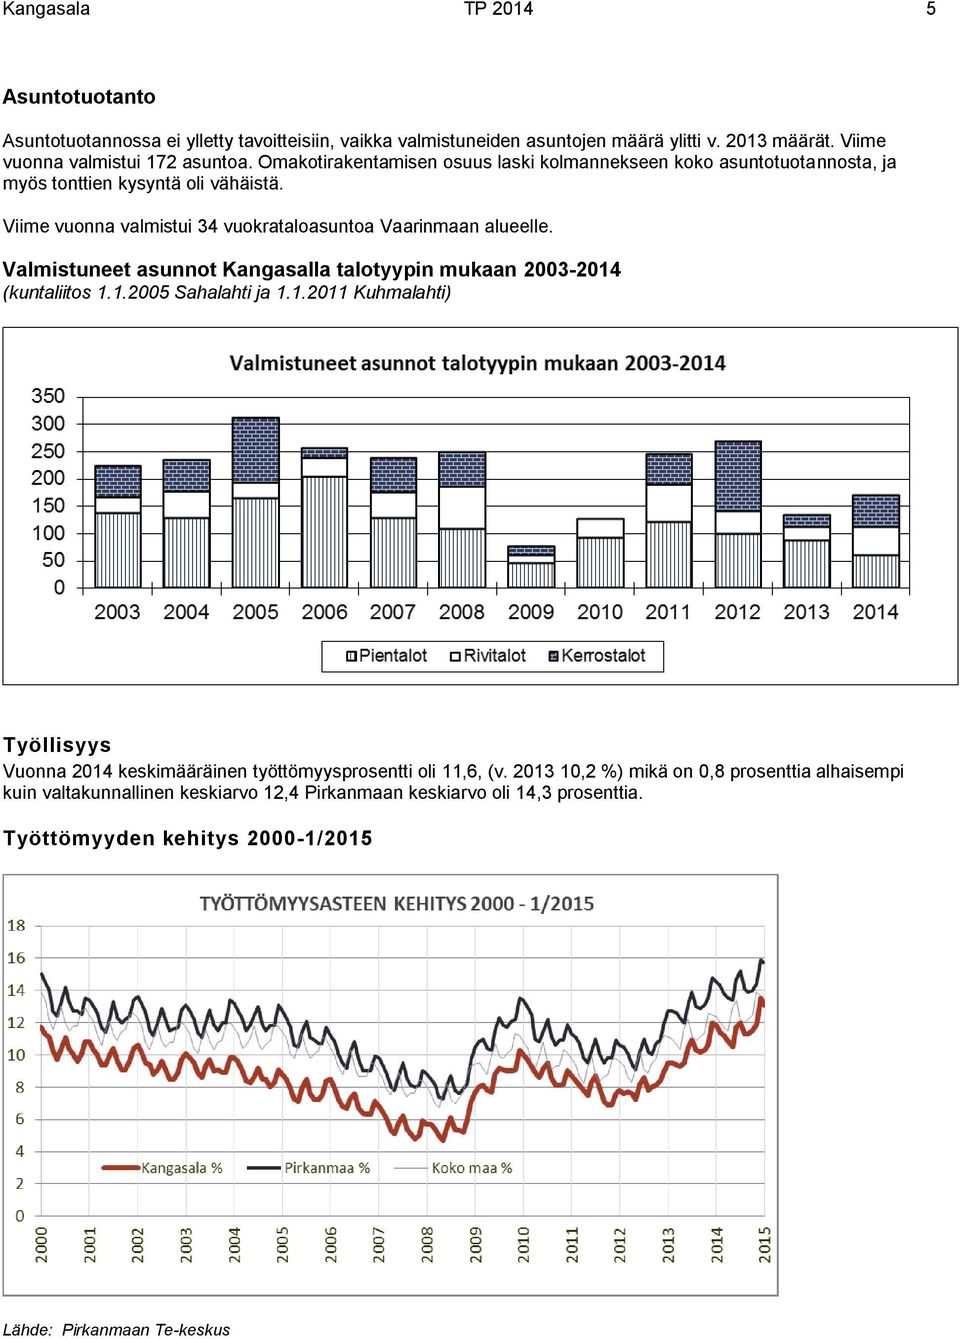 Valmistuneet asunnot Kangasalla talotyypin mukaan 2003-2014 (kuntaliitos 1.1.2005 Sahalahti ja 1.1.2011 Kuhmalahti) Työllisyys Vuonna 2014 keskimääräinen työttömyysprosentti oli 11,6, (v.